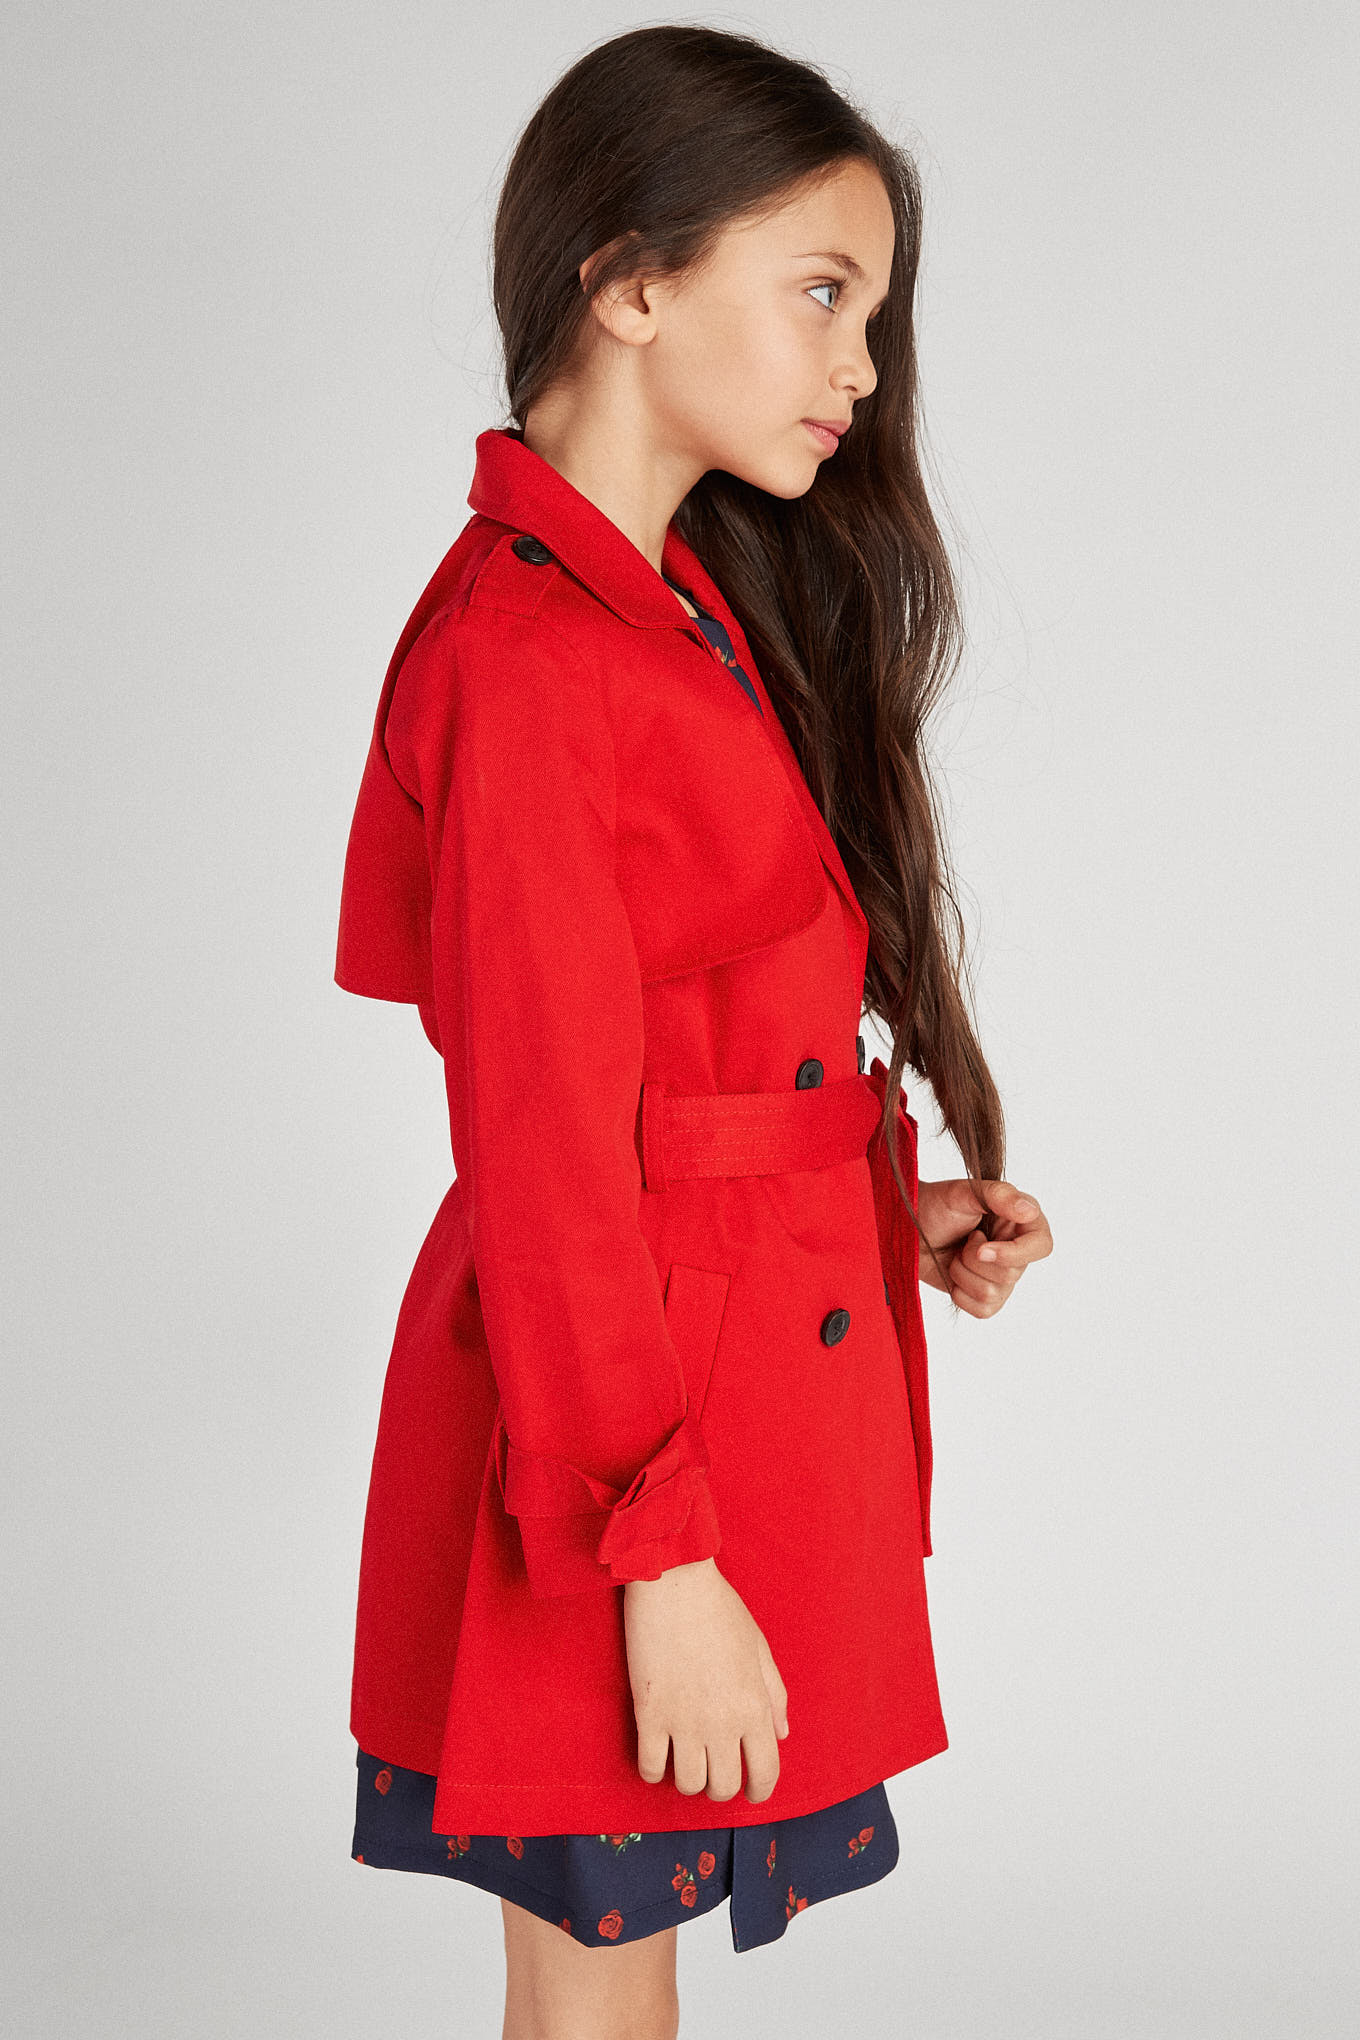 Raincoat Red Sport Girl